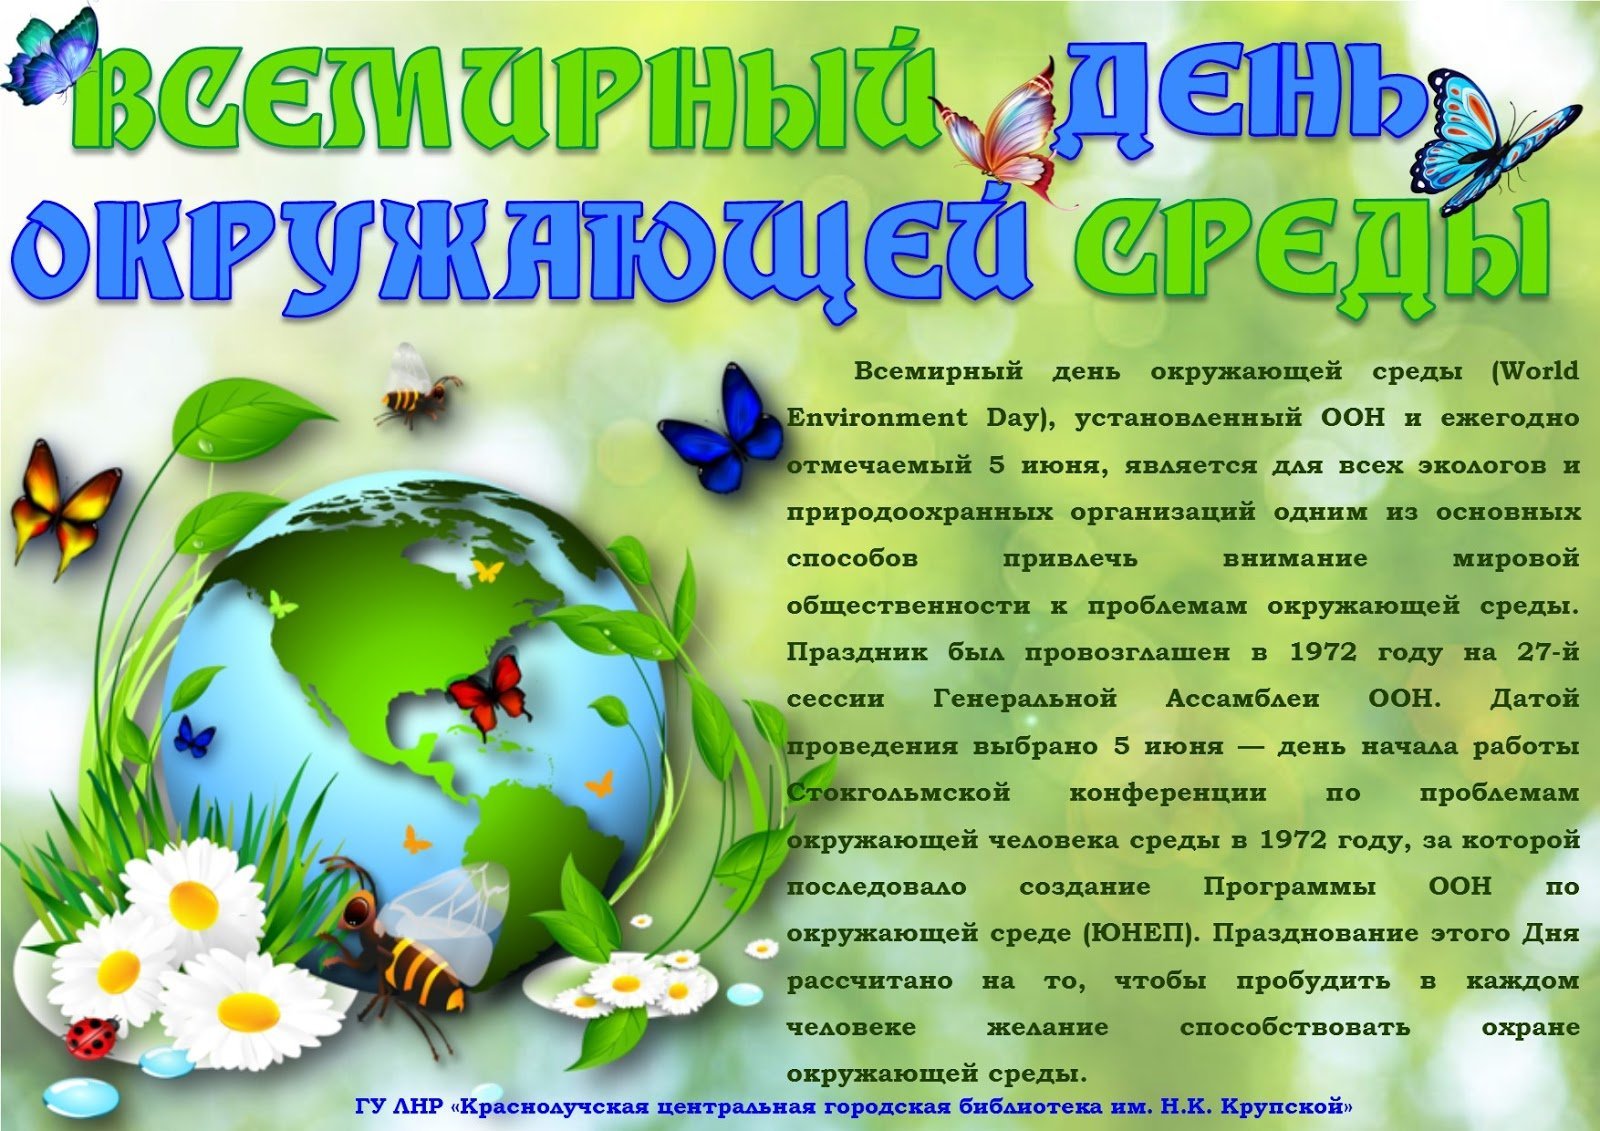 Международный экологический праздник. Всемирный день окружающей среды. Всемирный день окружающий среды. Всемирный день охраны окружающей среды. Всемирный день окружающей среды и день эколога.